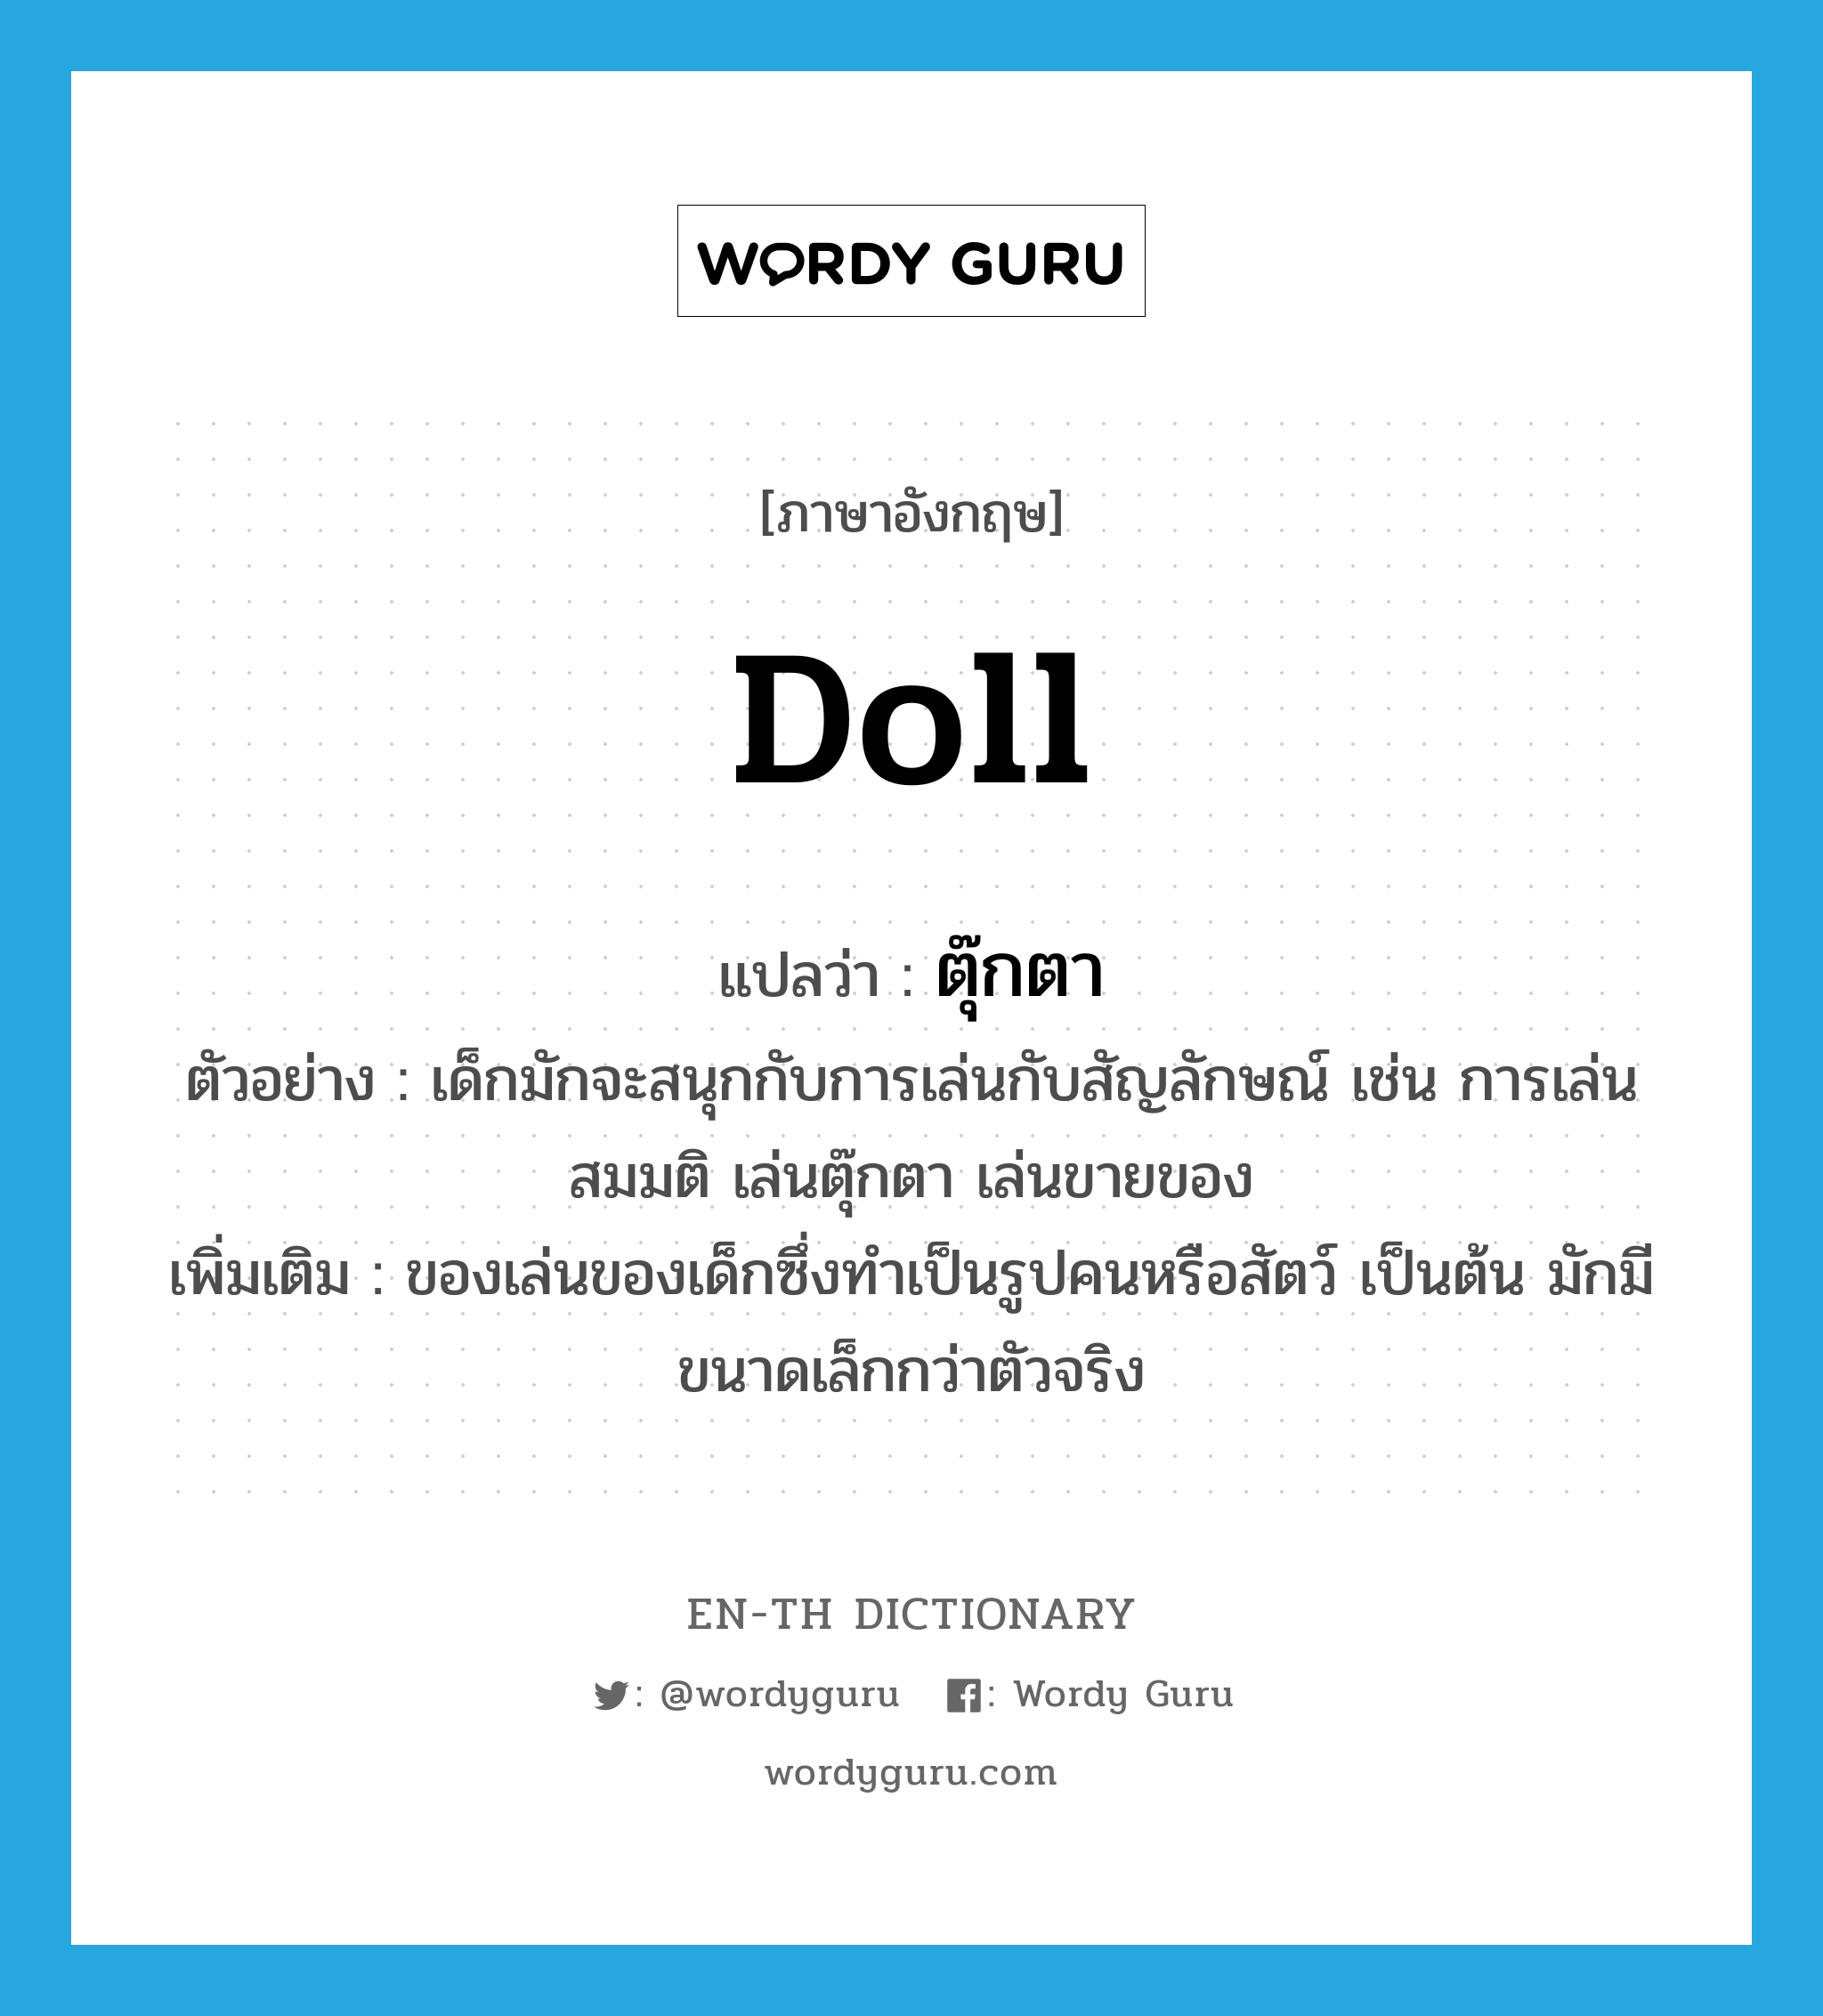 doll แปลว่า?, คำศัพท์ภาษาอังกฤษ doll แปลว่า ตุ๊กตา ประเภท N ตัวอย่าง เด็กมักจะสนุกกับการเล่นกับสัญลักษณ์ เช่น การเล่นสมมติ เล่นตุ๊กตา เล่นขายของ เพิ่มเติม ของเล่นของเด็กซึ่งทำเป็นรูปคนหรือสัตว์ เป็นต้น มักมีขนาดเล็กกว่าตัวจริง หมวด N